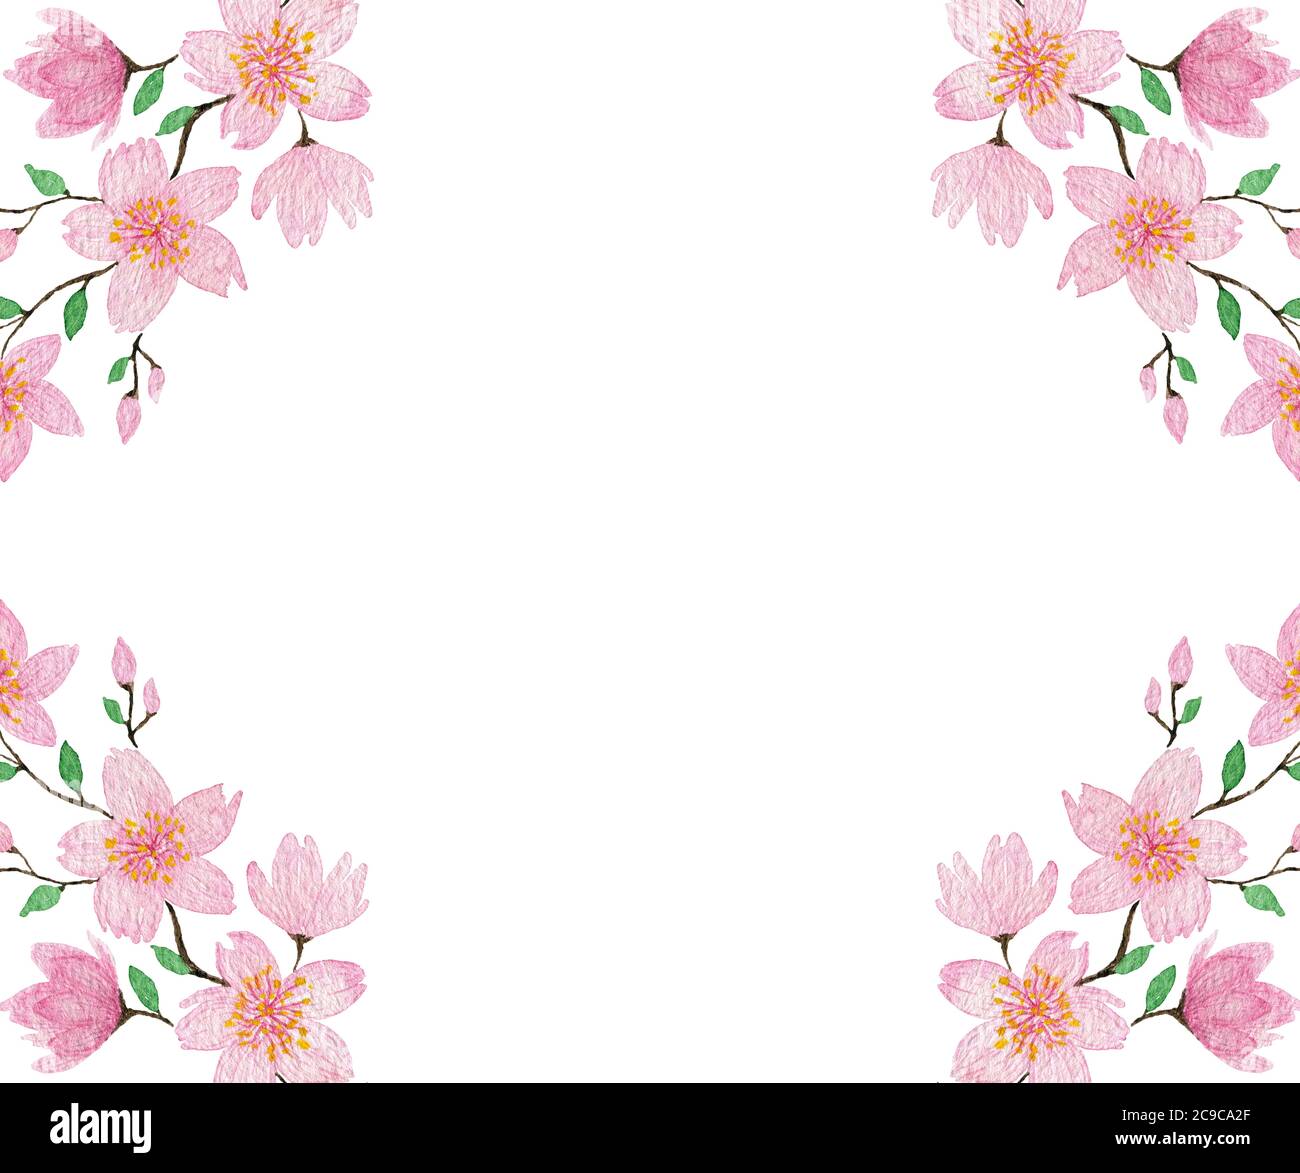 cadre de fleur de cerisier aquarelle, illustration botanique de fleur de sakura pour les voeux, cartes, fête des mères, motif de vacances de pâques Banque D'Images